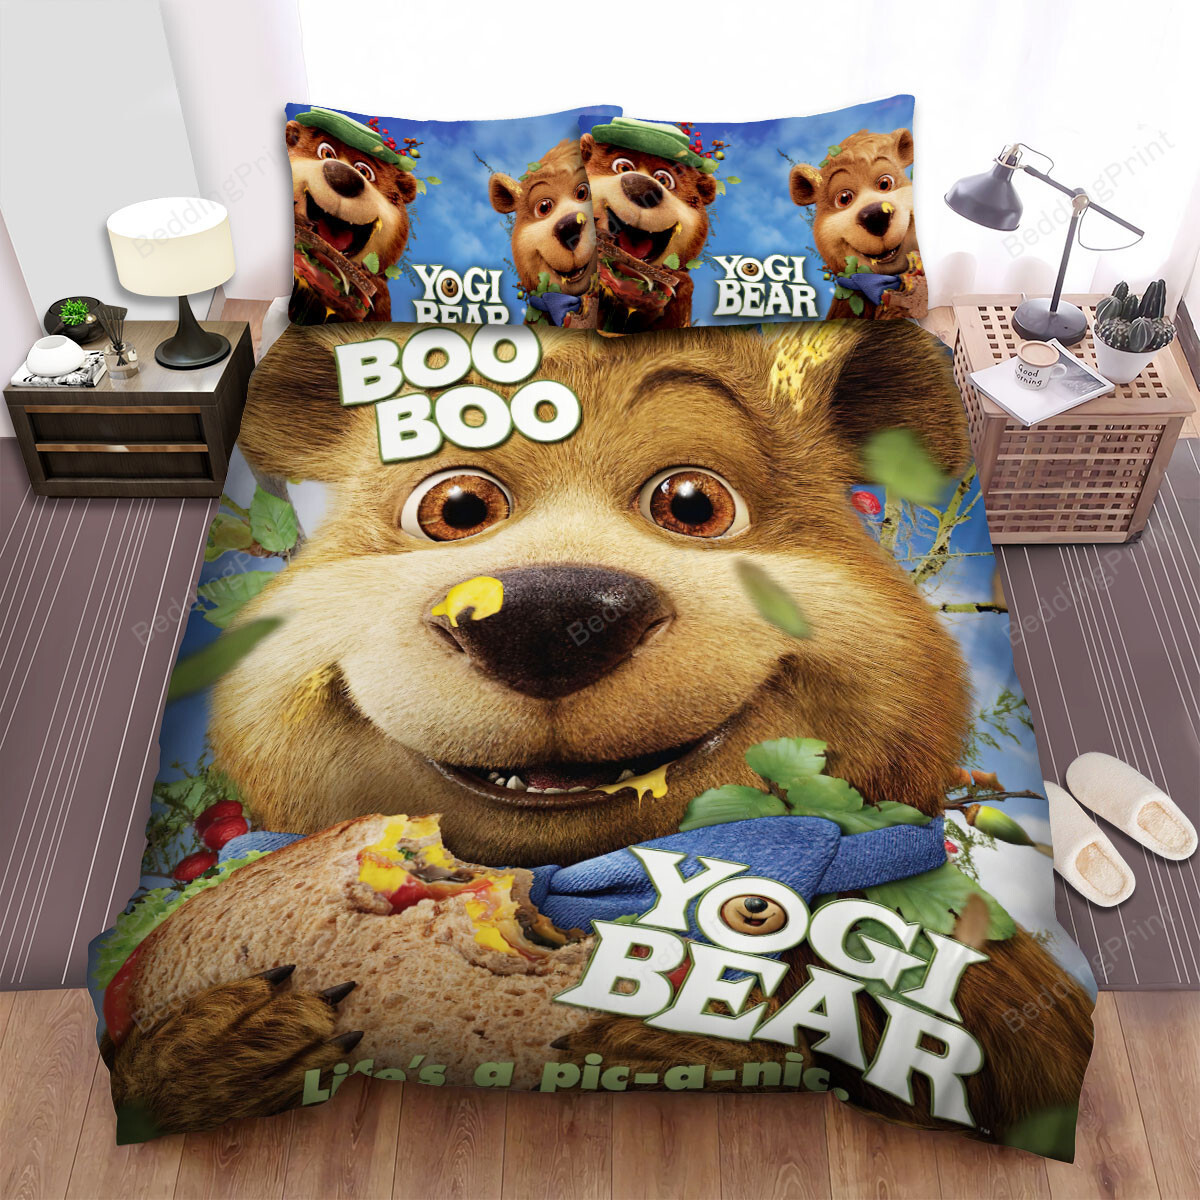 Yogi Bear Boo Boo Bear 3d Poster Bed Sheets Spread Duvet Cover Bedding Sets